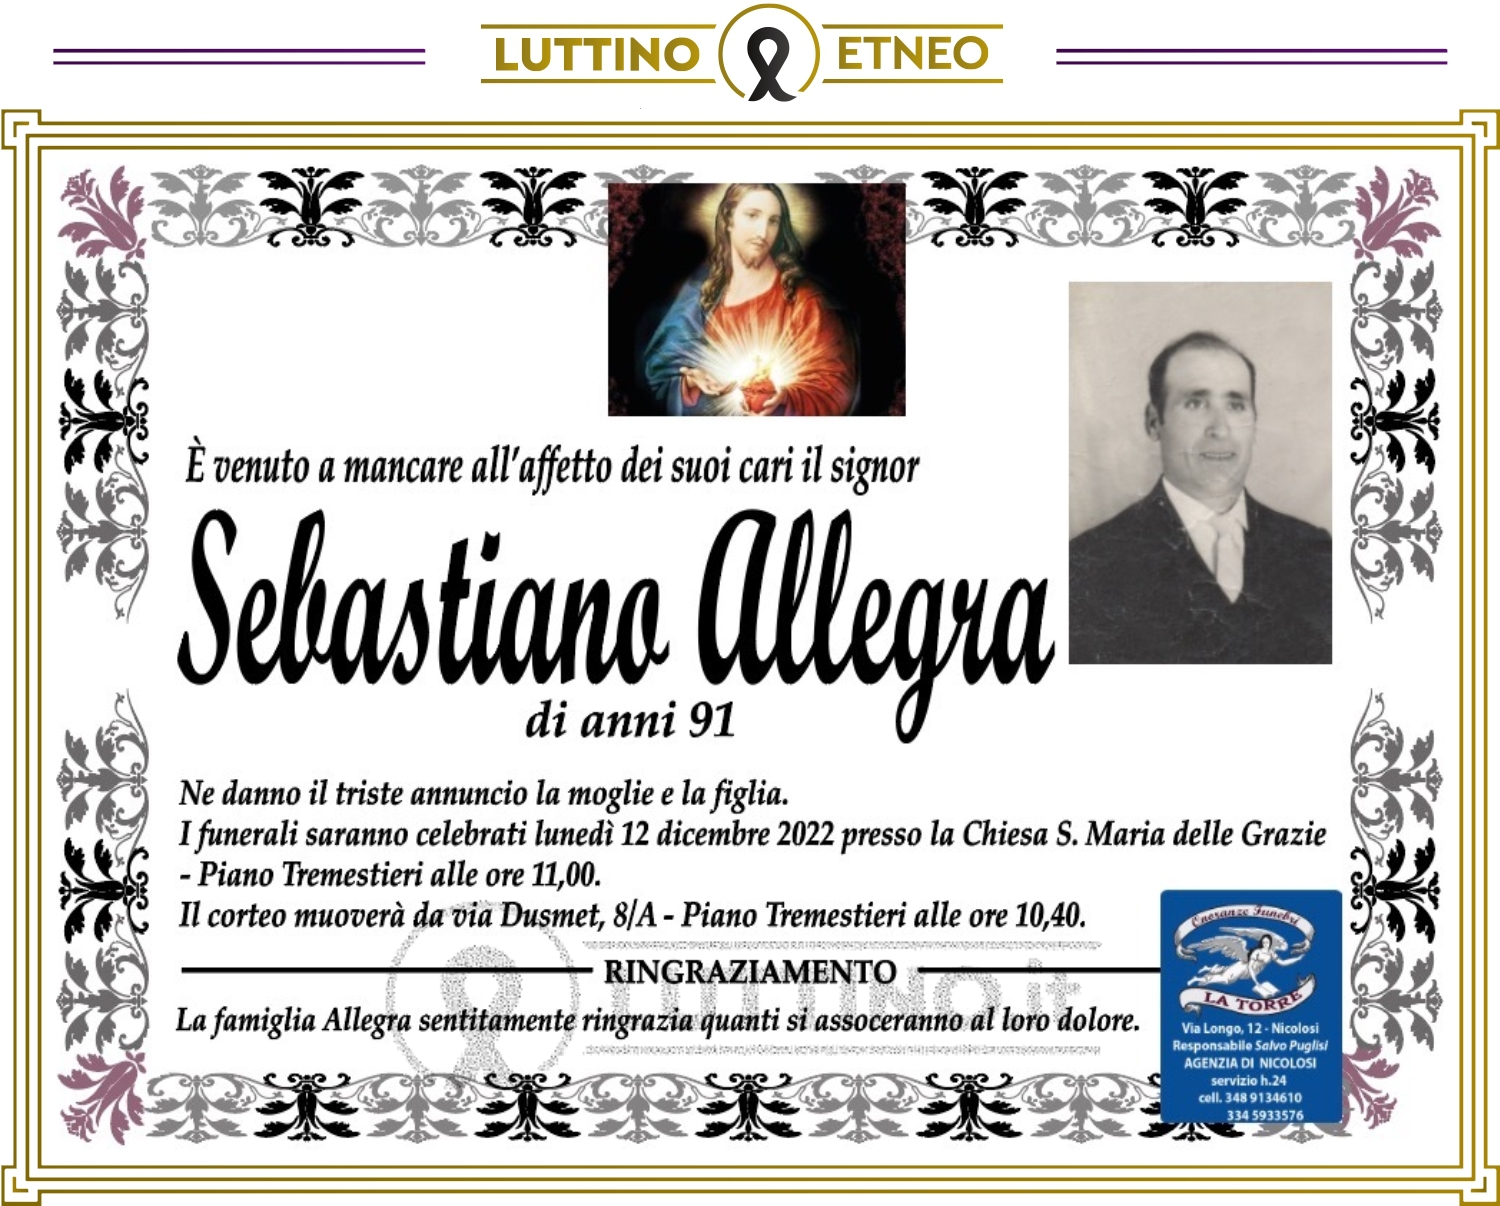 Sebastiano  Allegra 